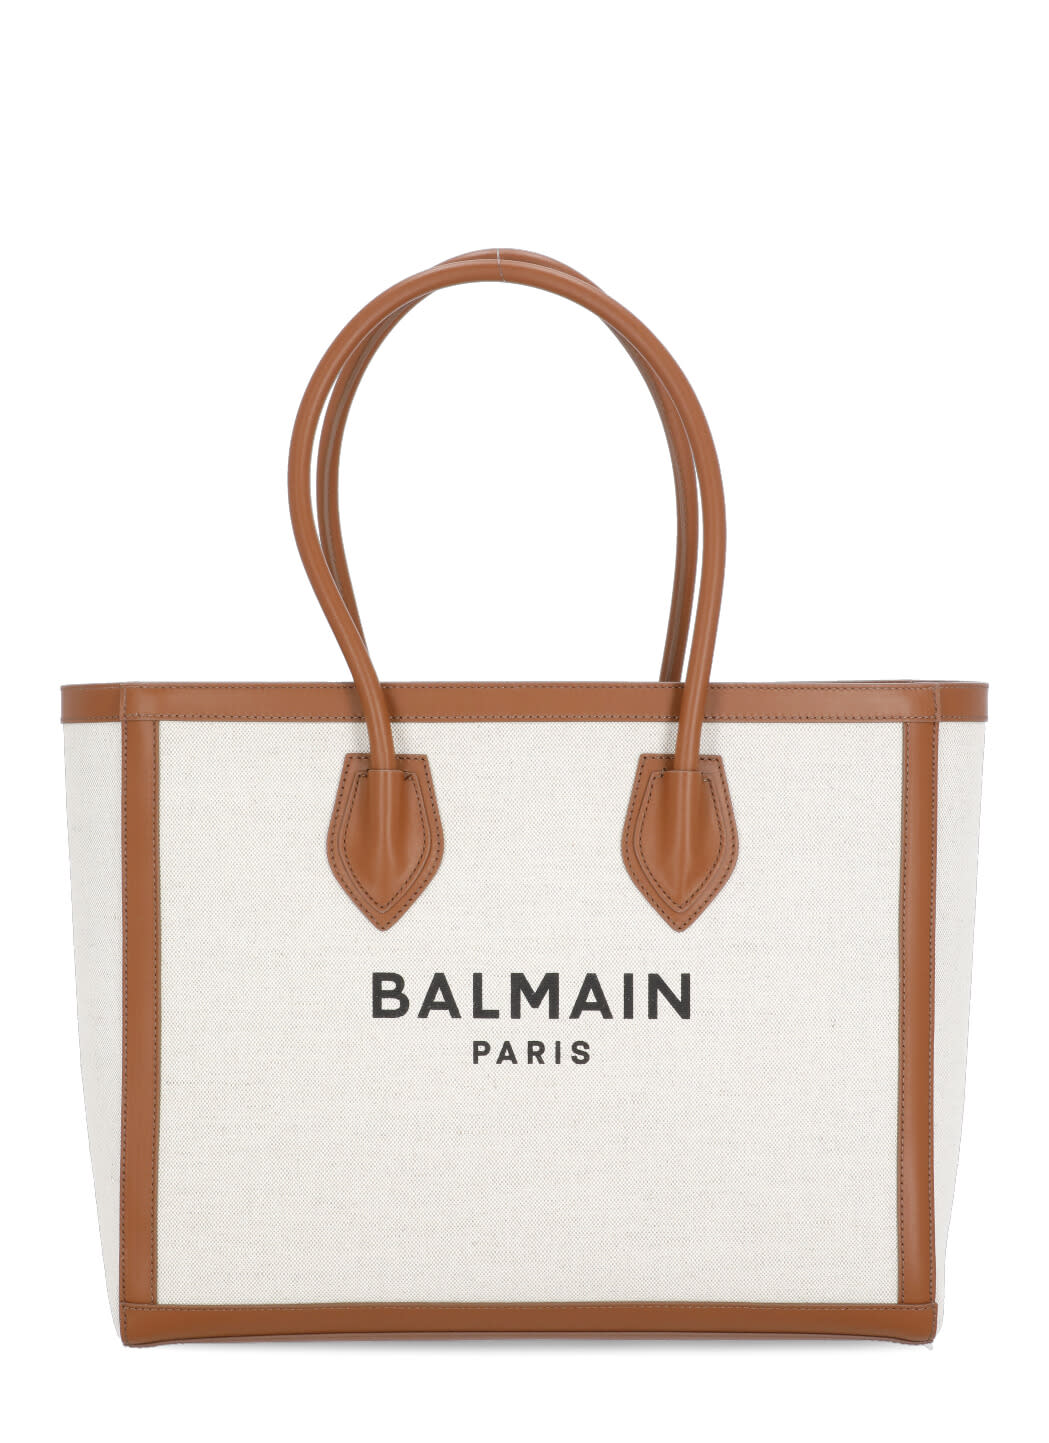 Balmain B-army 42 Shopping Bag